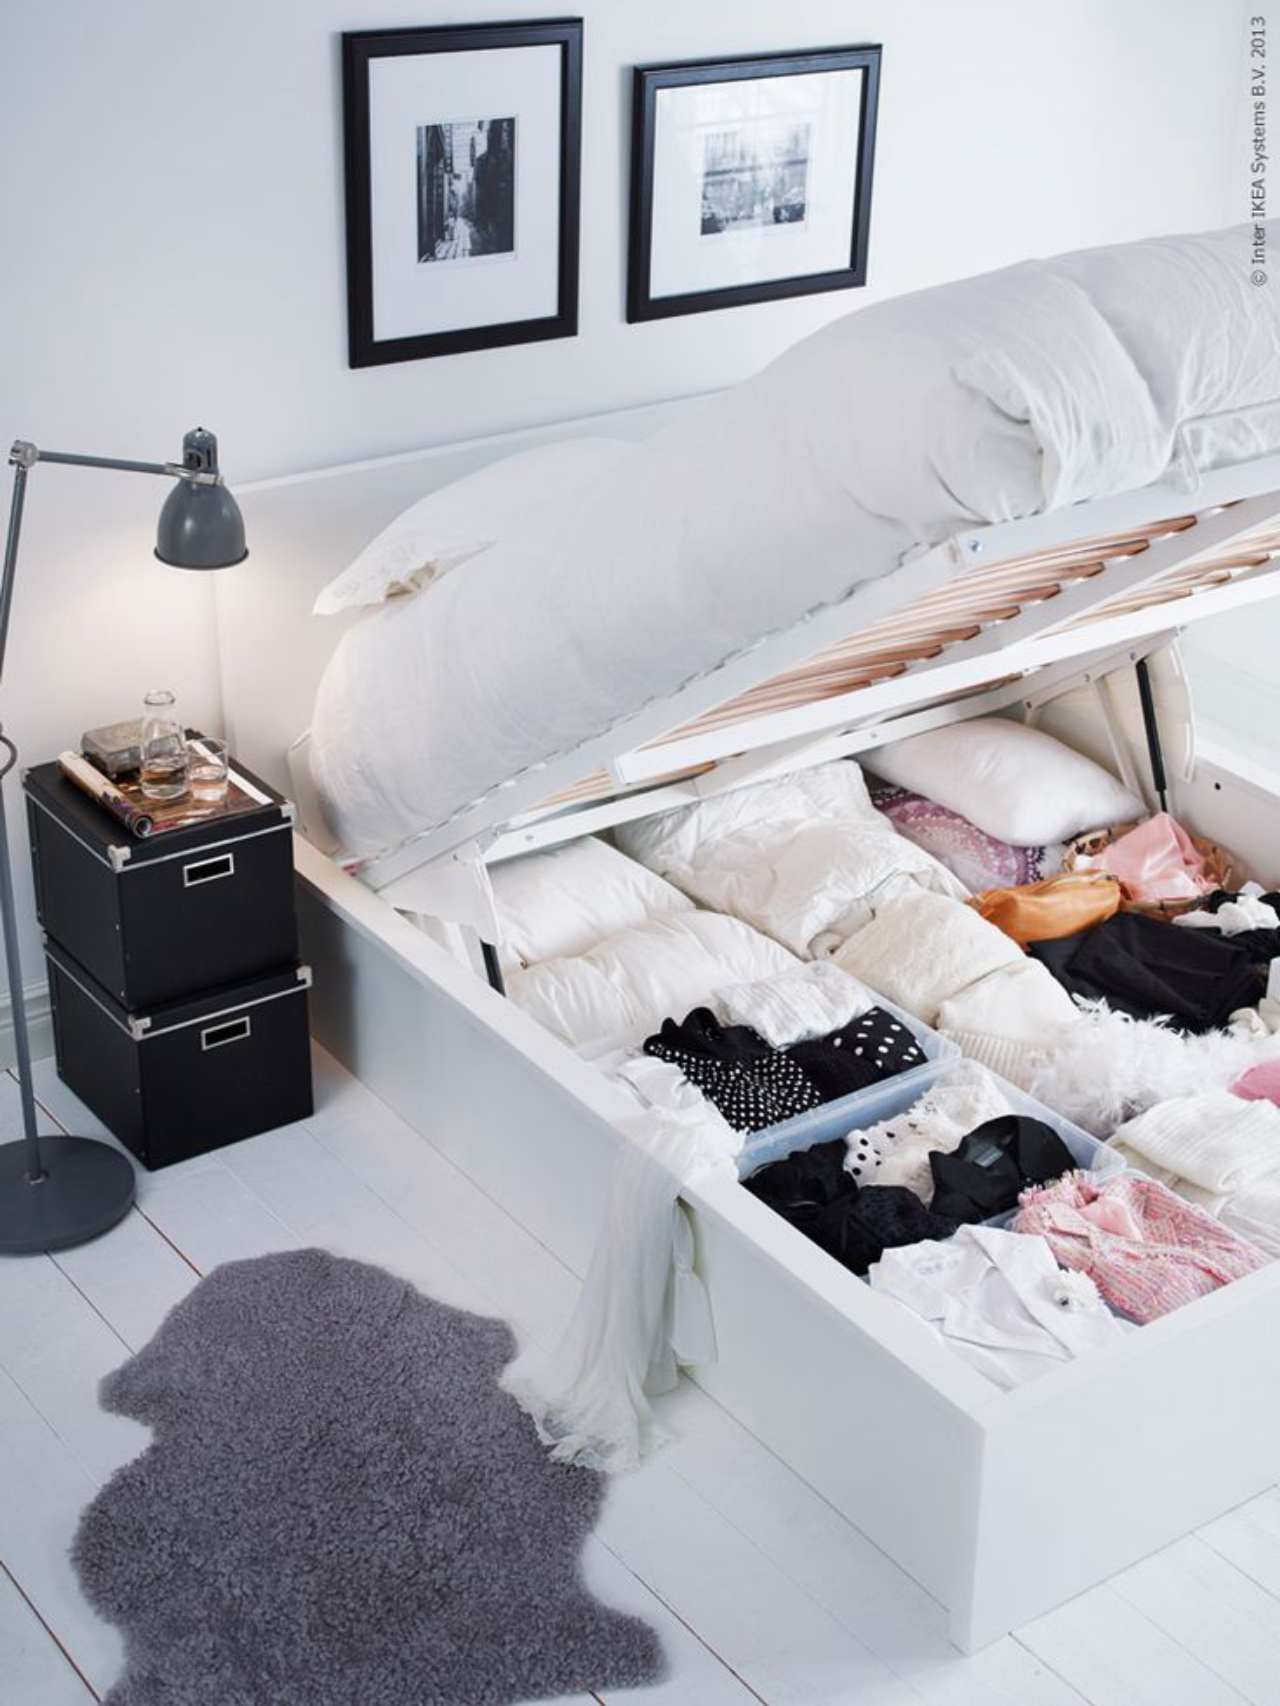 A cama com baú reserva espaço suficiente para peça de roupas menos usadas. / Crédito: Pinterest.